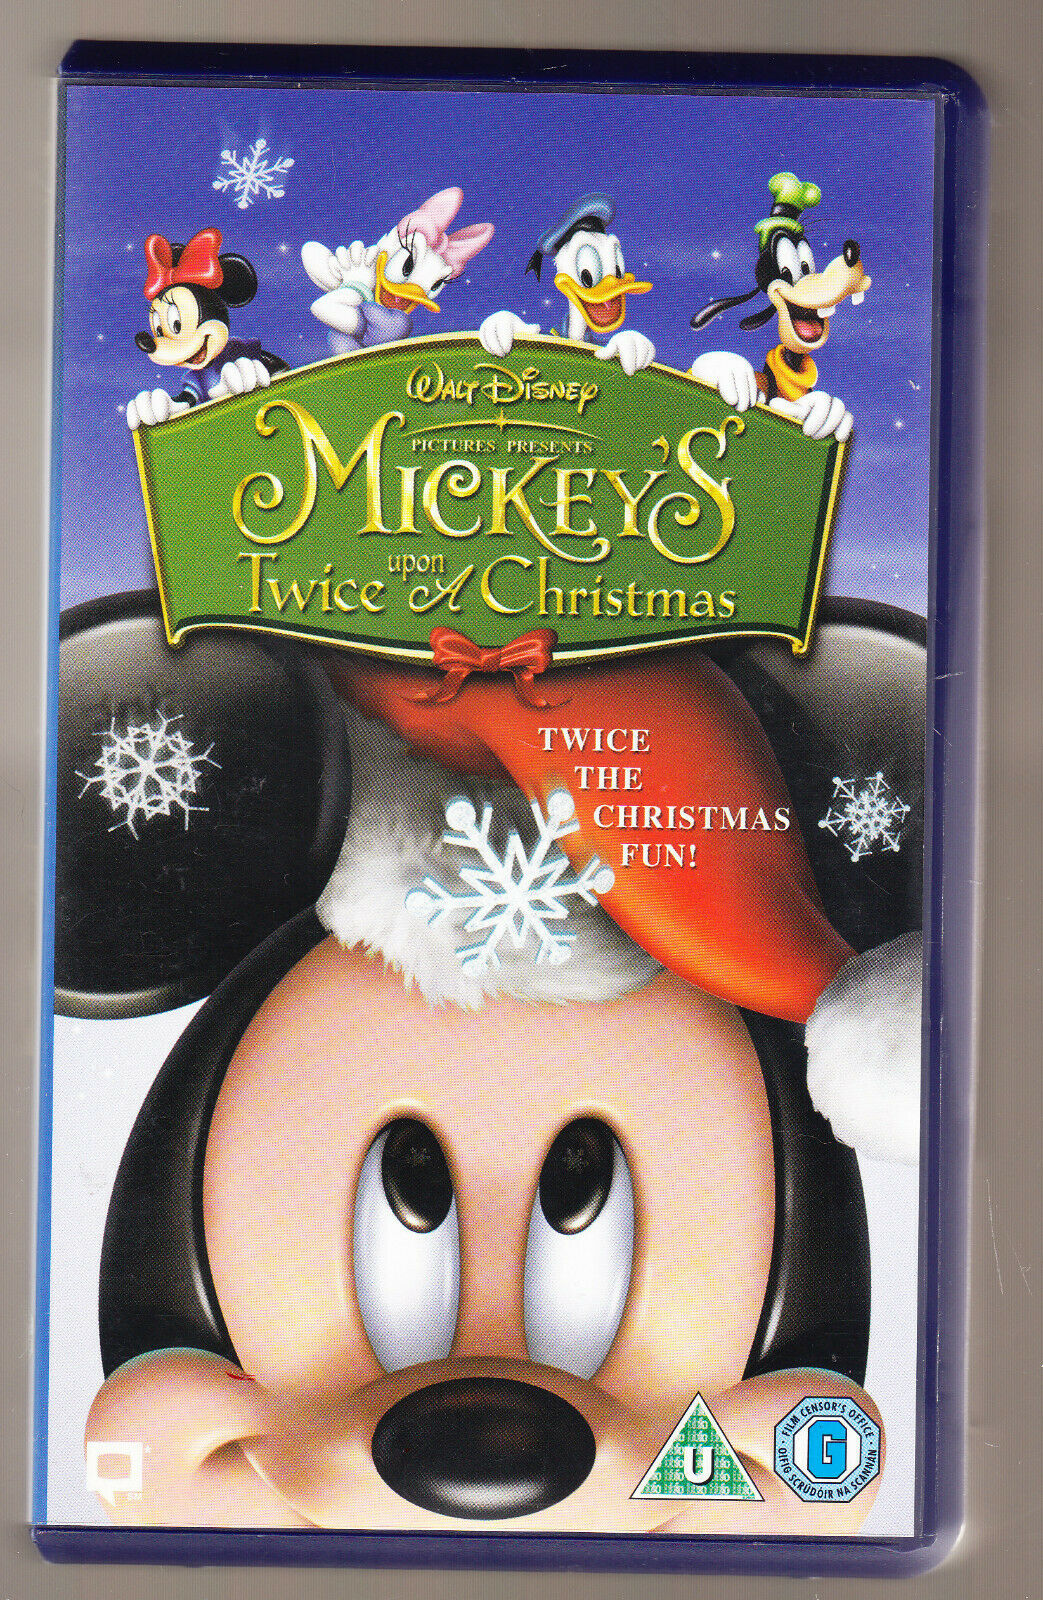 Mickey S Twice Upon A Christmas Video Disney Wiki Fandom